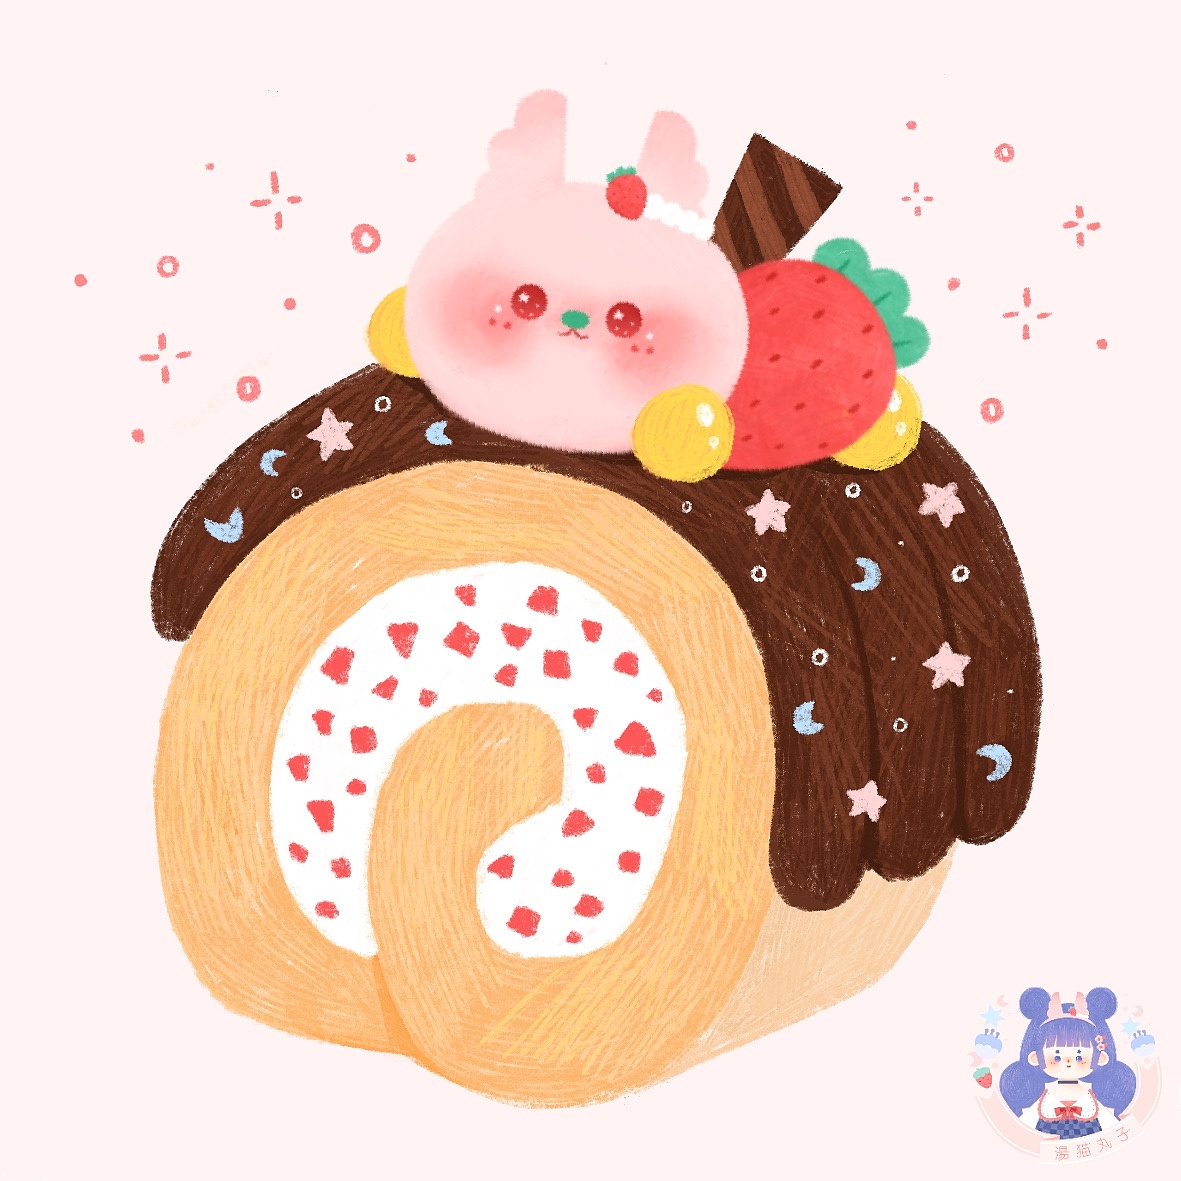 粉色造型兔兔翻糖蛋糕 | 翻糖造型蛋糕 - Daisycafe